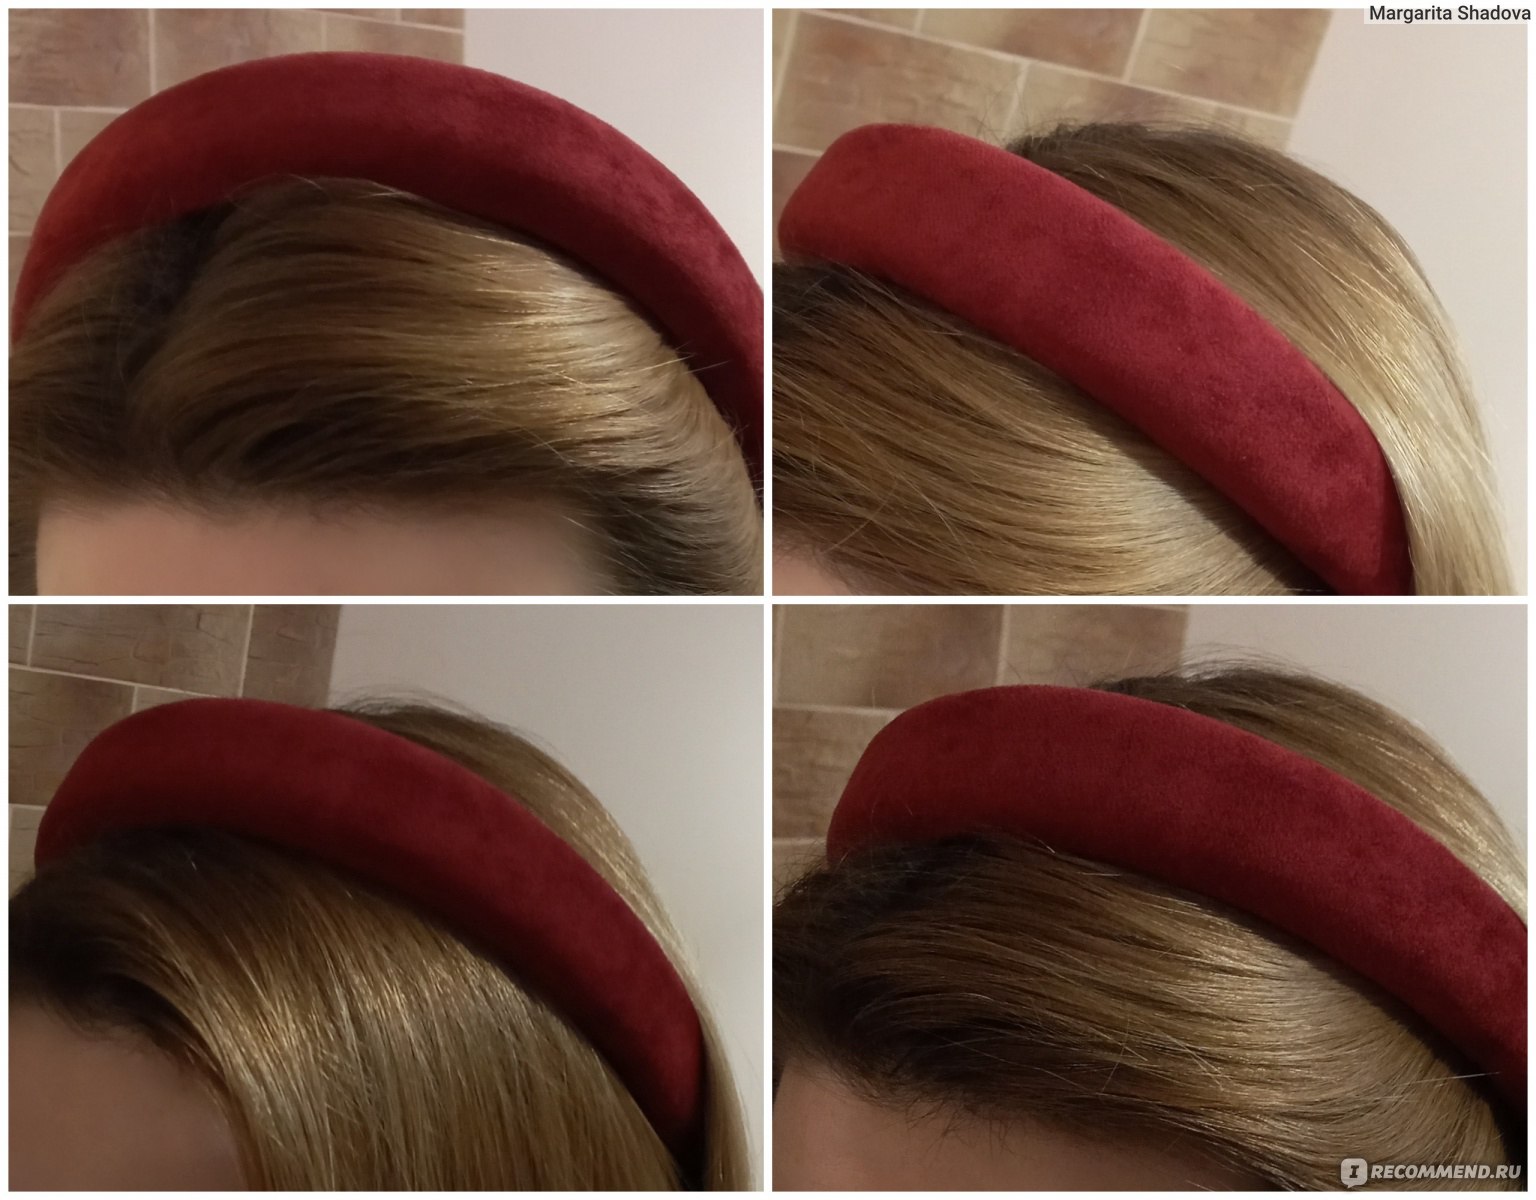 Как сделать обруч для волос с цветами своими руками - пошаговый мастер-класс